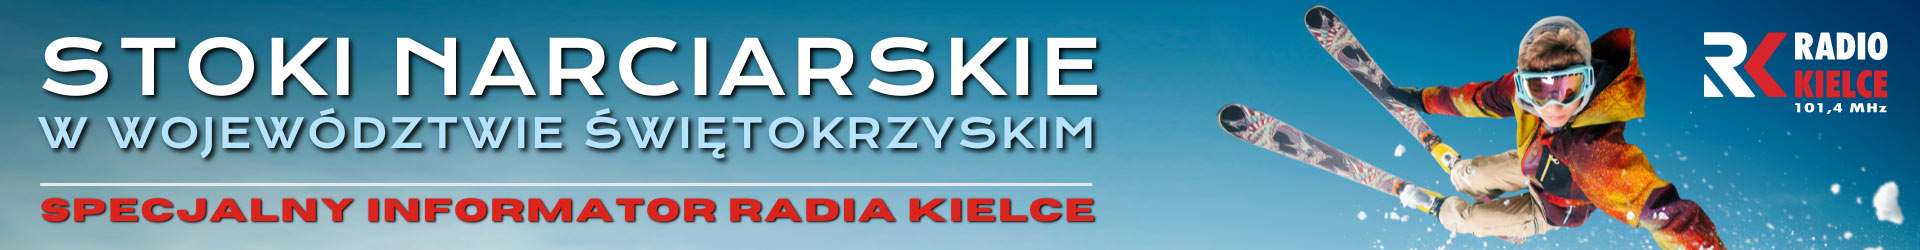 Świętokrzyskie stoki narciarskie przeżywają oblężenie [ZDJĘCIA] - Radio Kielce